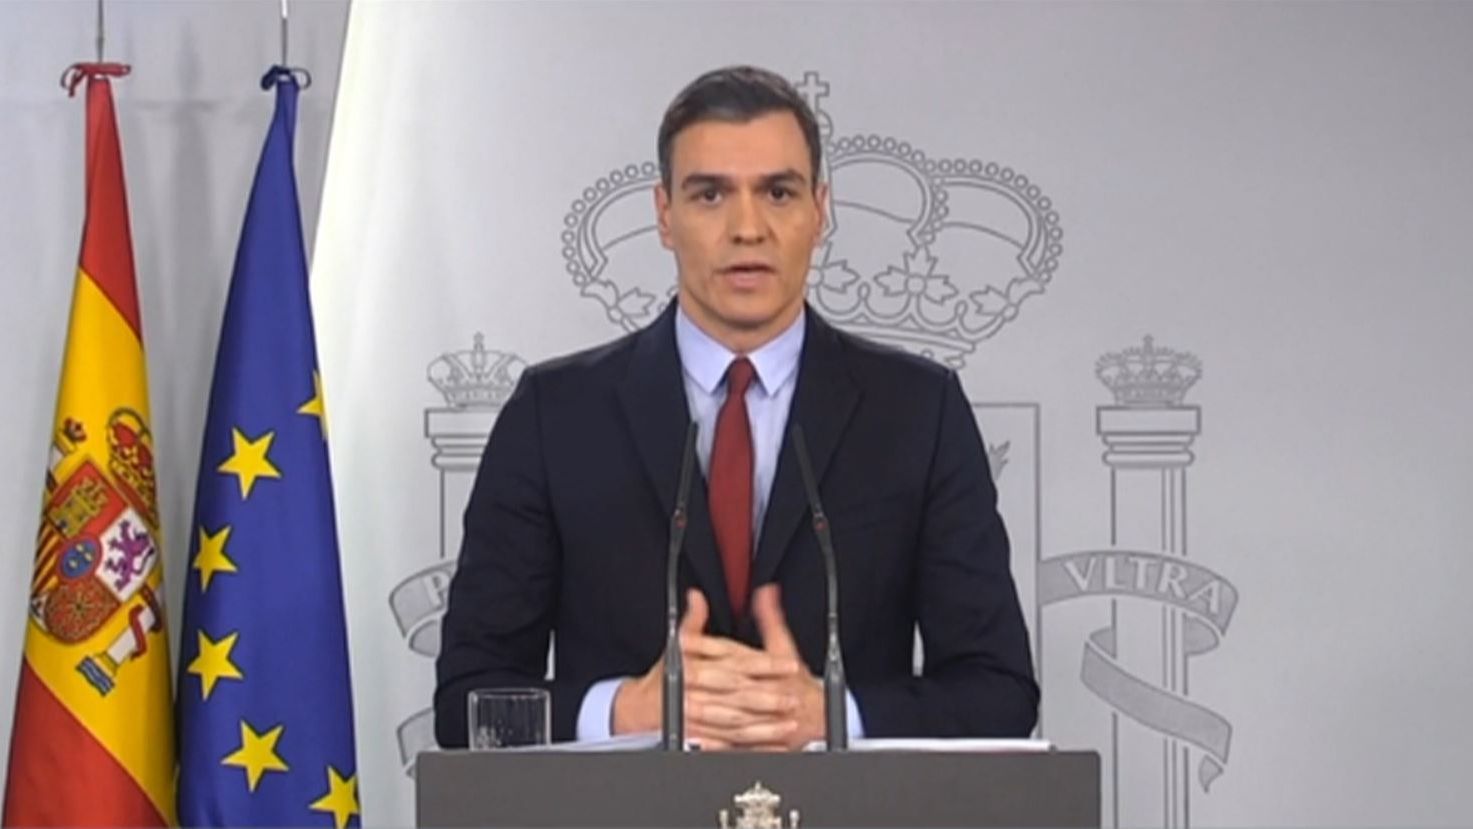 El presidente del Gobierno, Pedro Sánchez, declara el estado de alarma en España por la pandemia de coronavirus